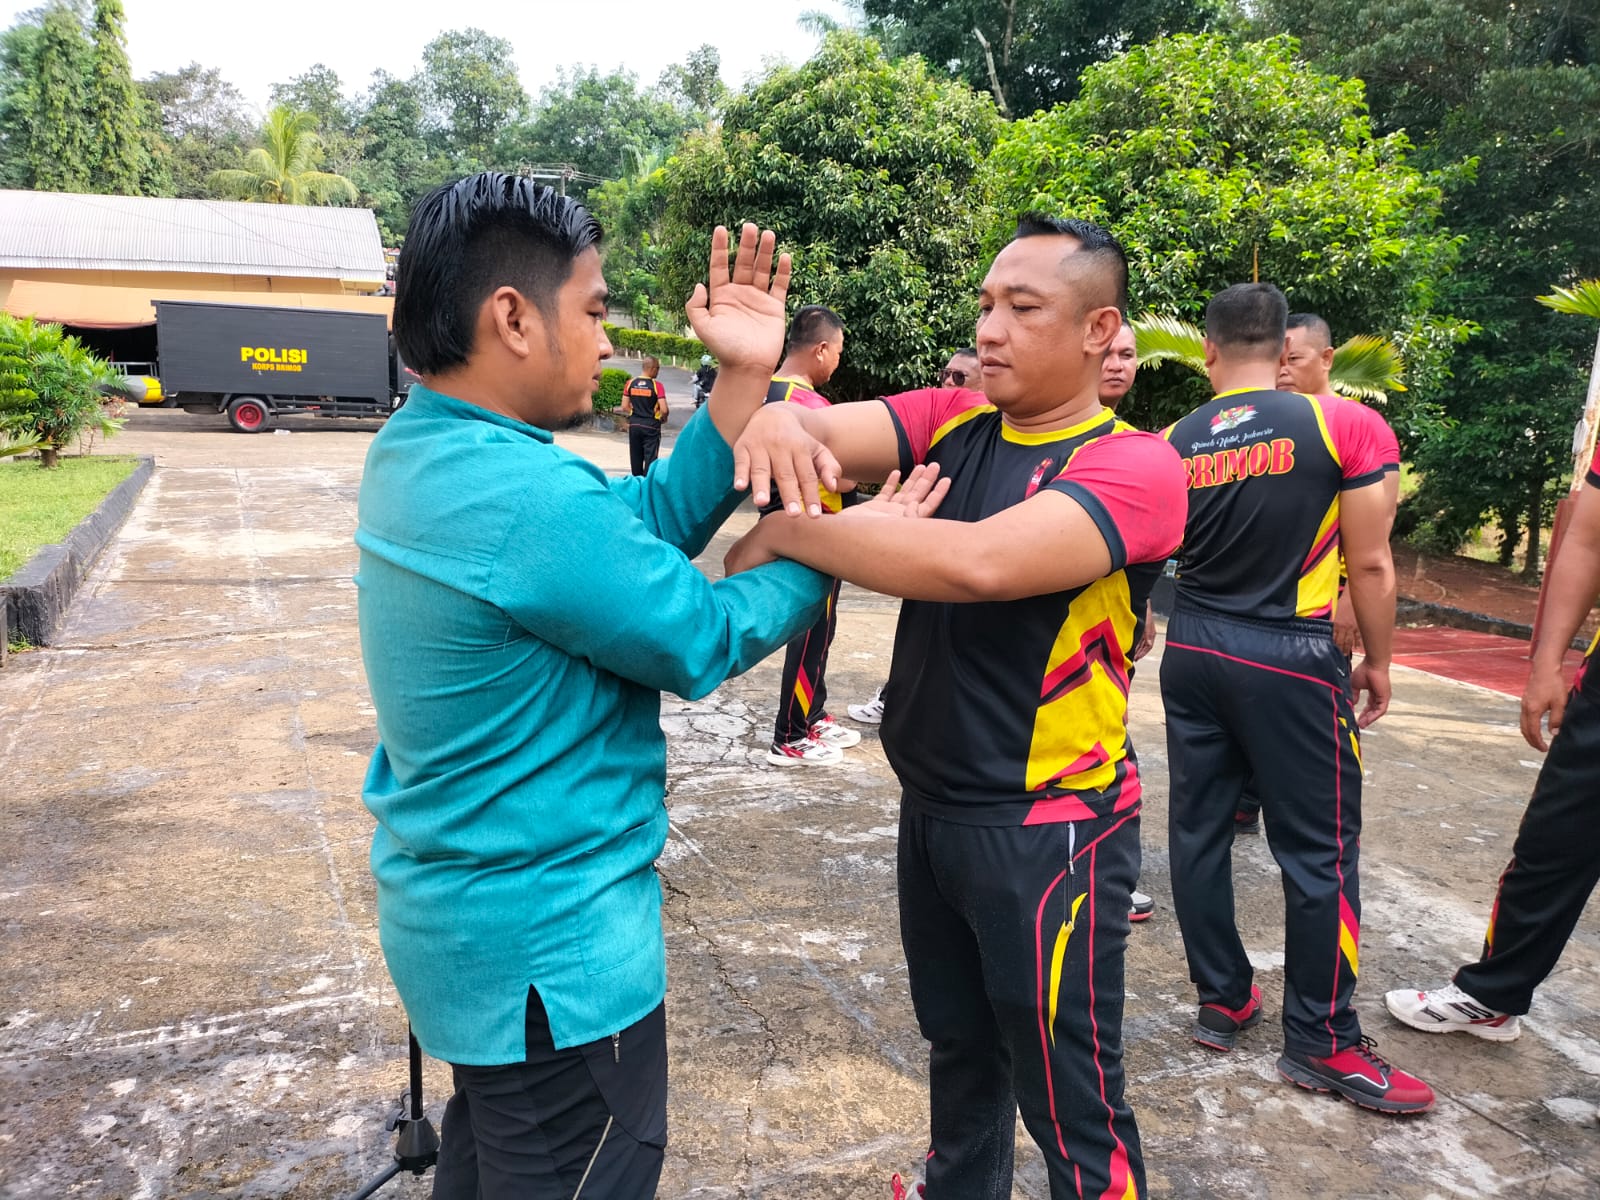 Tingkatkan Kemampuan, Personel Brimob Sumsel Rutin Latihan Bela Diri Wing Chun